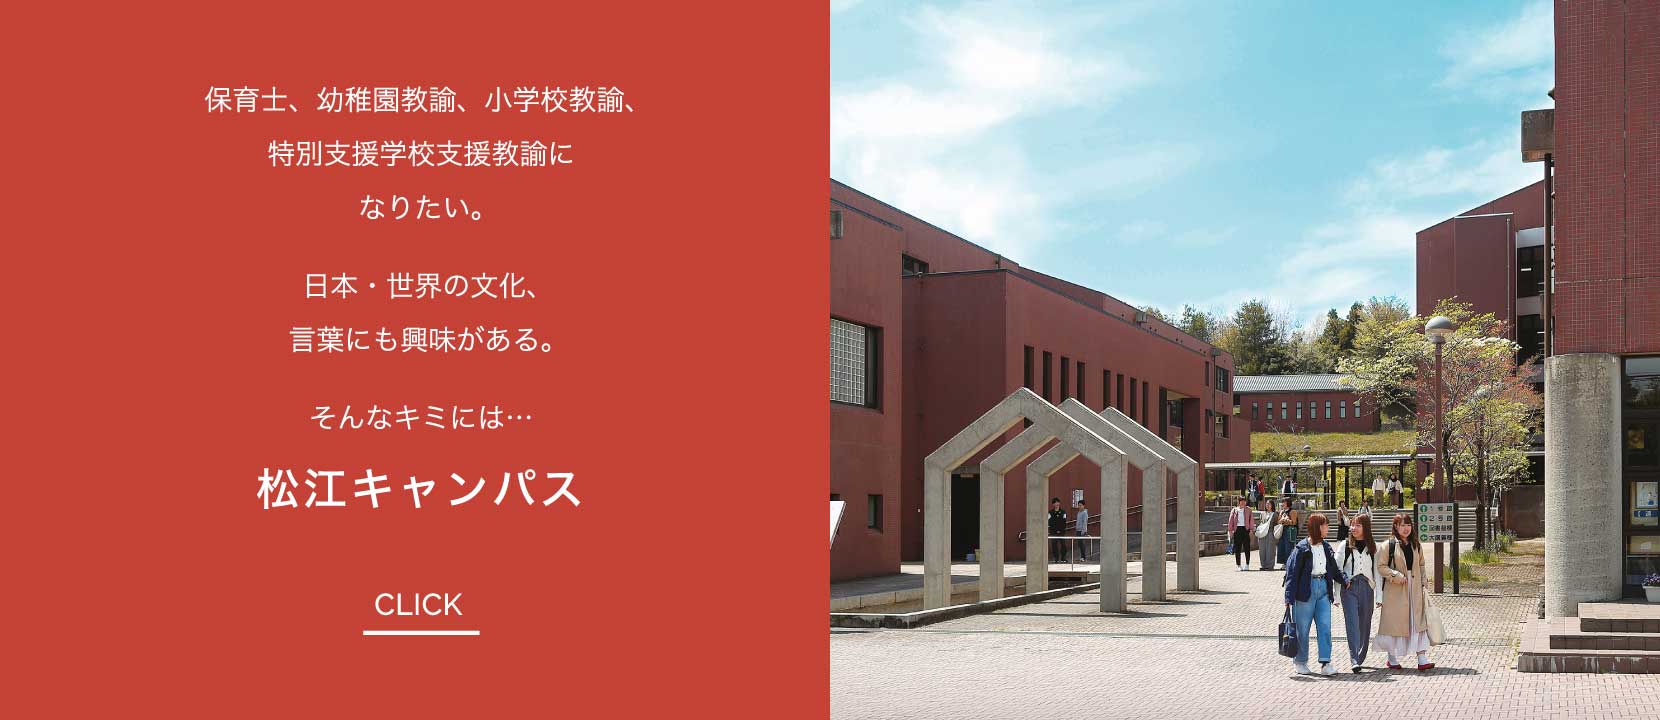 松江キャンパス